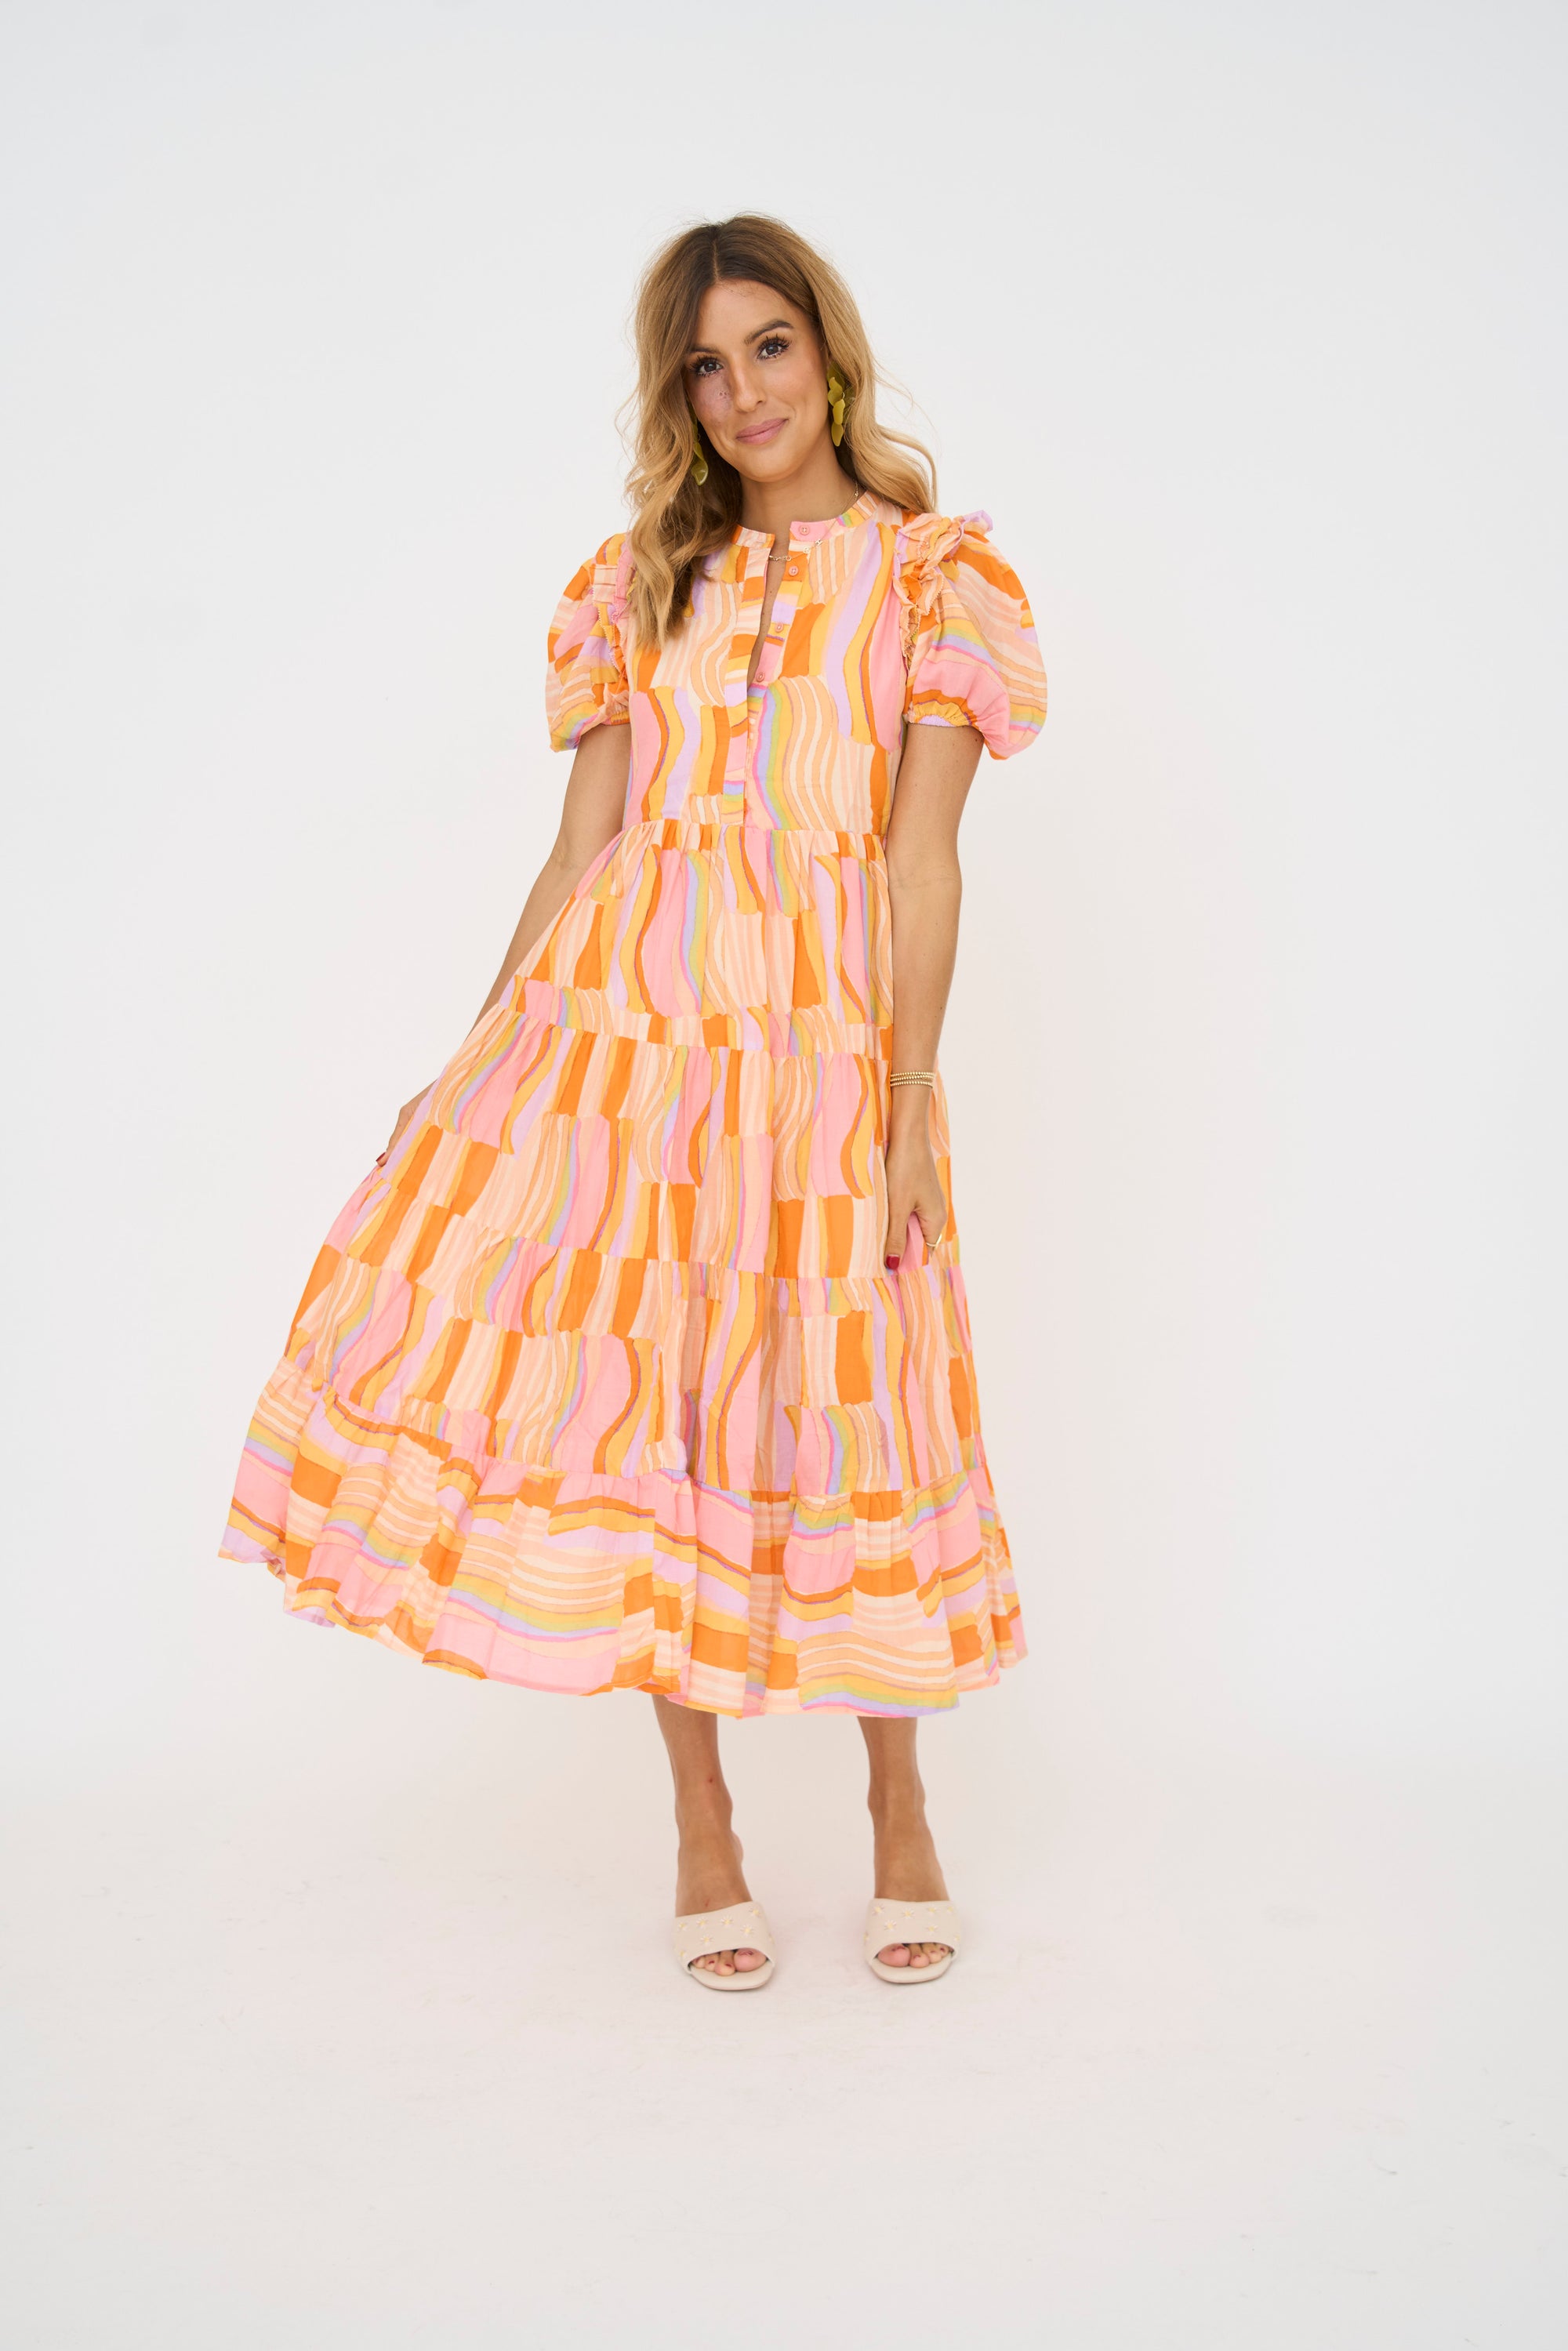 Citrus Grove Ruffle Maxi Dress